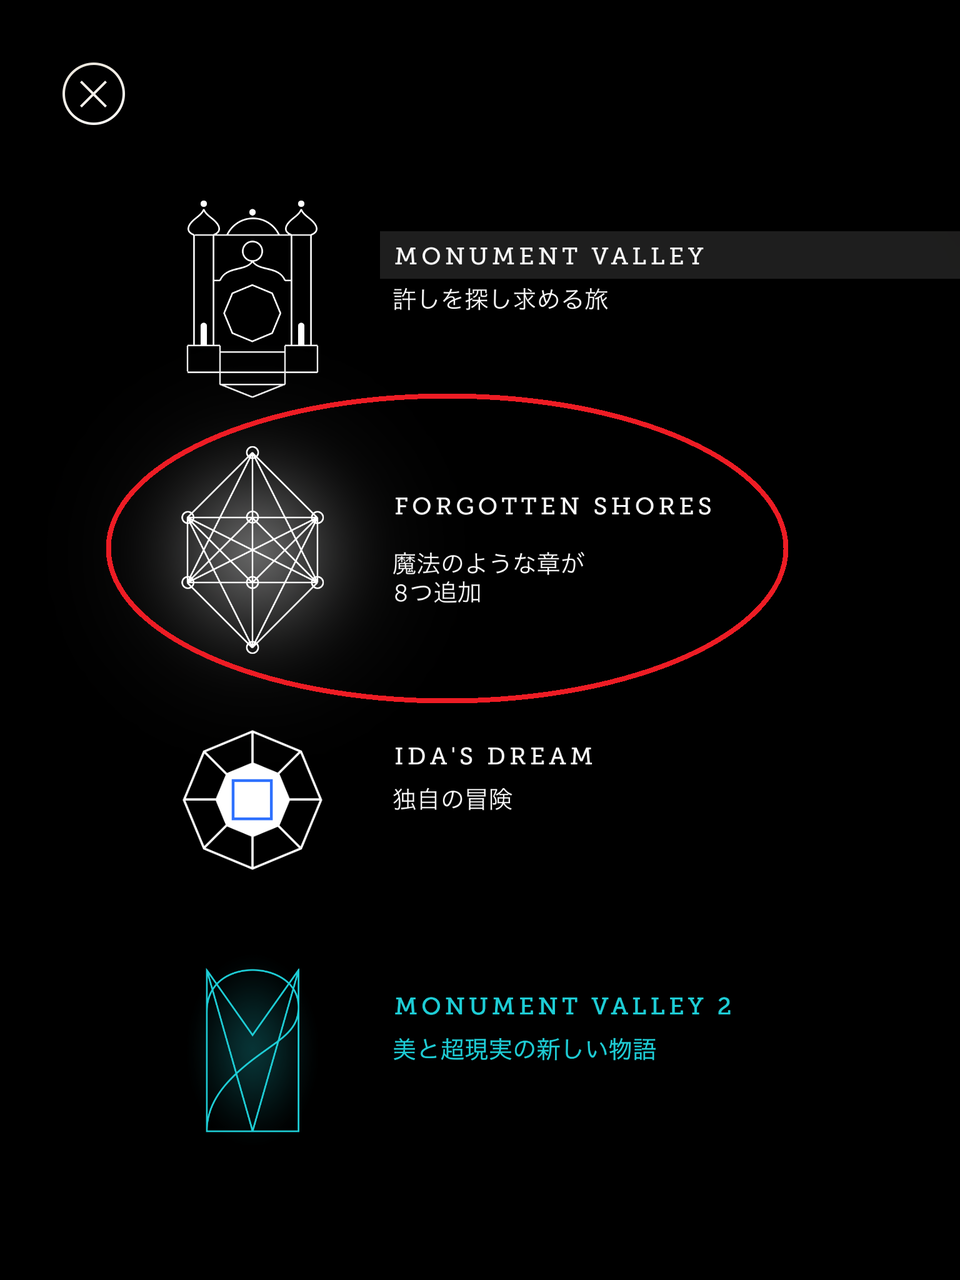 Ipadのアプリ Monument Valley モニュメントバレー をやってみた ねこじゃらし